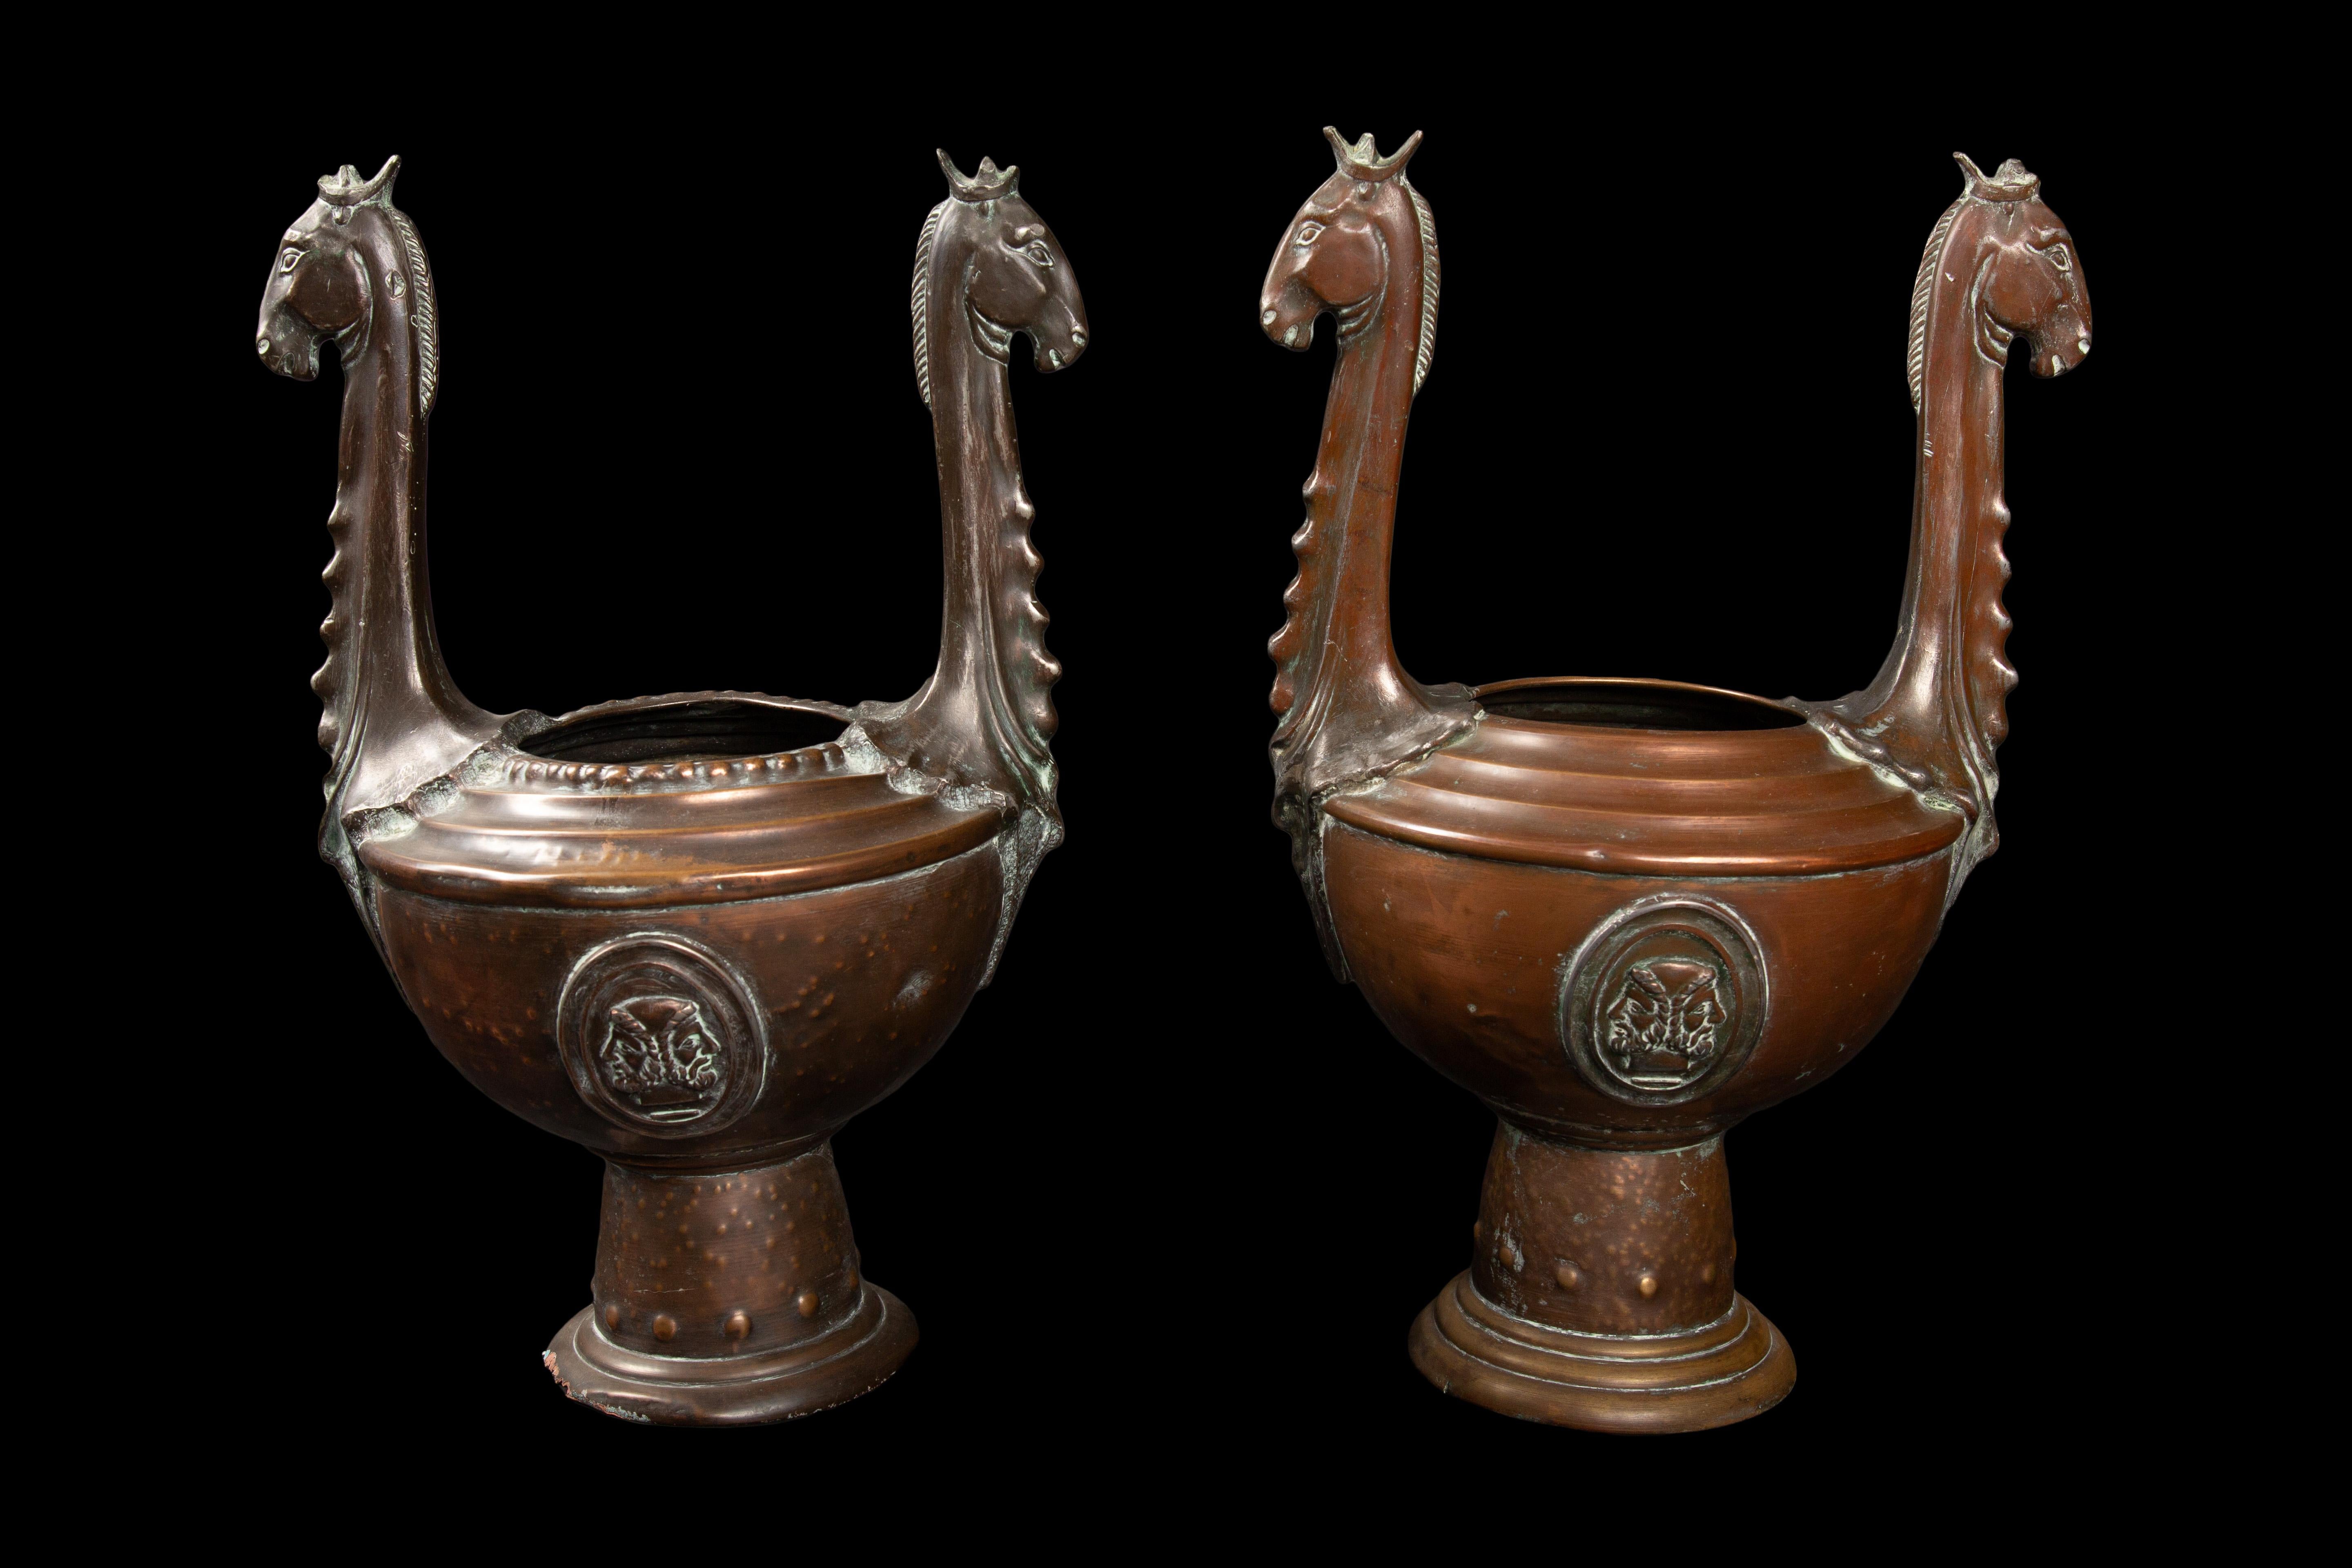 Exquisites Paar griechischer Urnen/Vasen aus Kupfer und Bronze aus dem 19. Jahrhundert, die an die hellenistische Ära erinnern und mit zeitlosen Symbolen der Weisheit und Stärke verziert sind. Auf jedem Gefäß ist stolz die verehrte Eule der Athene